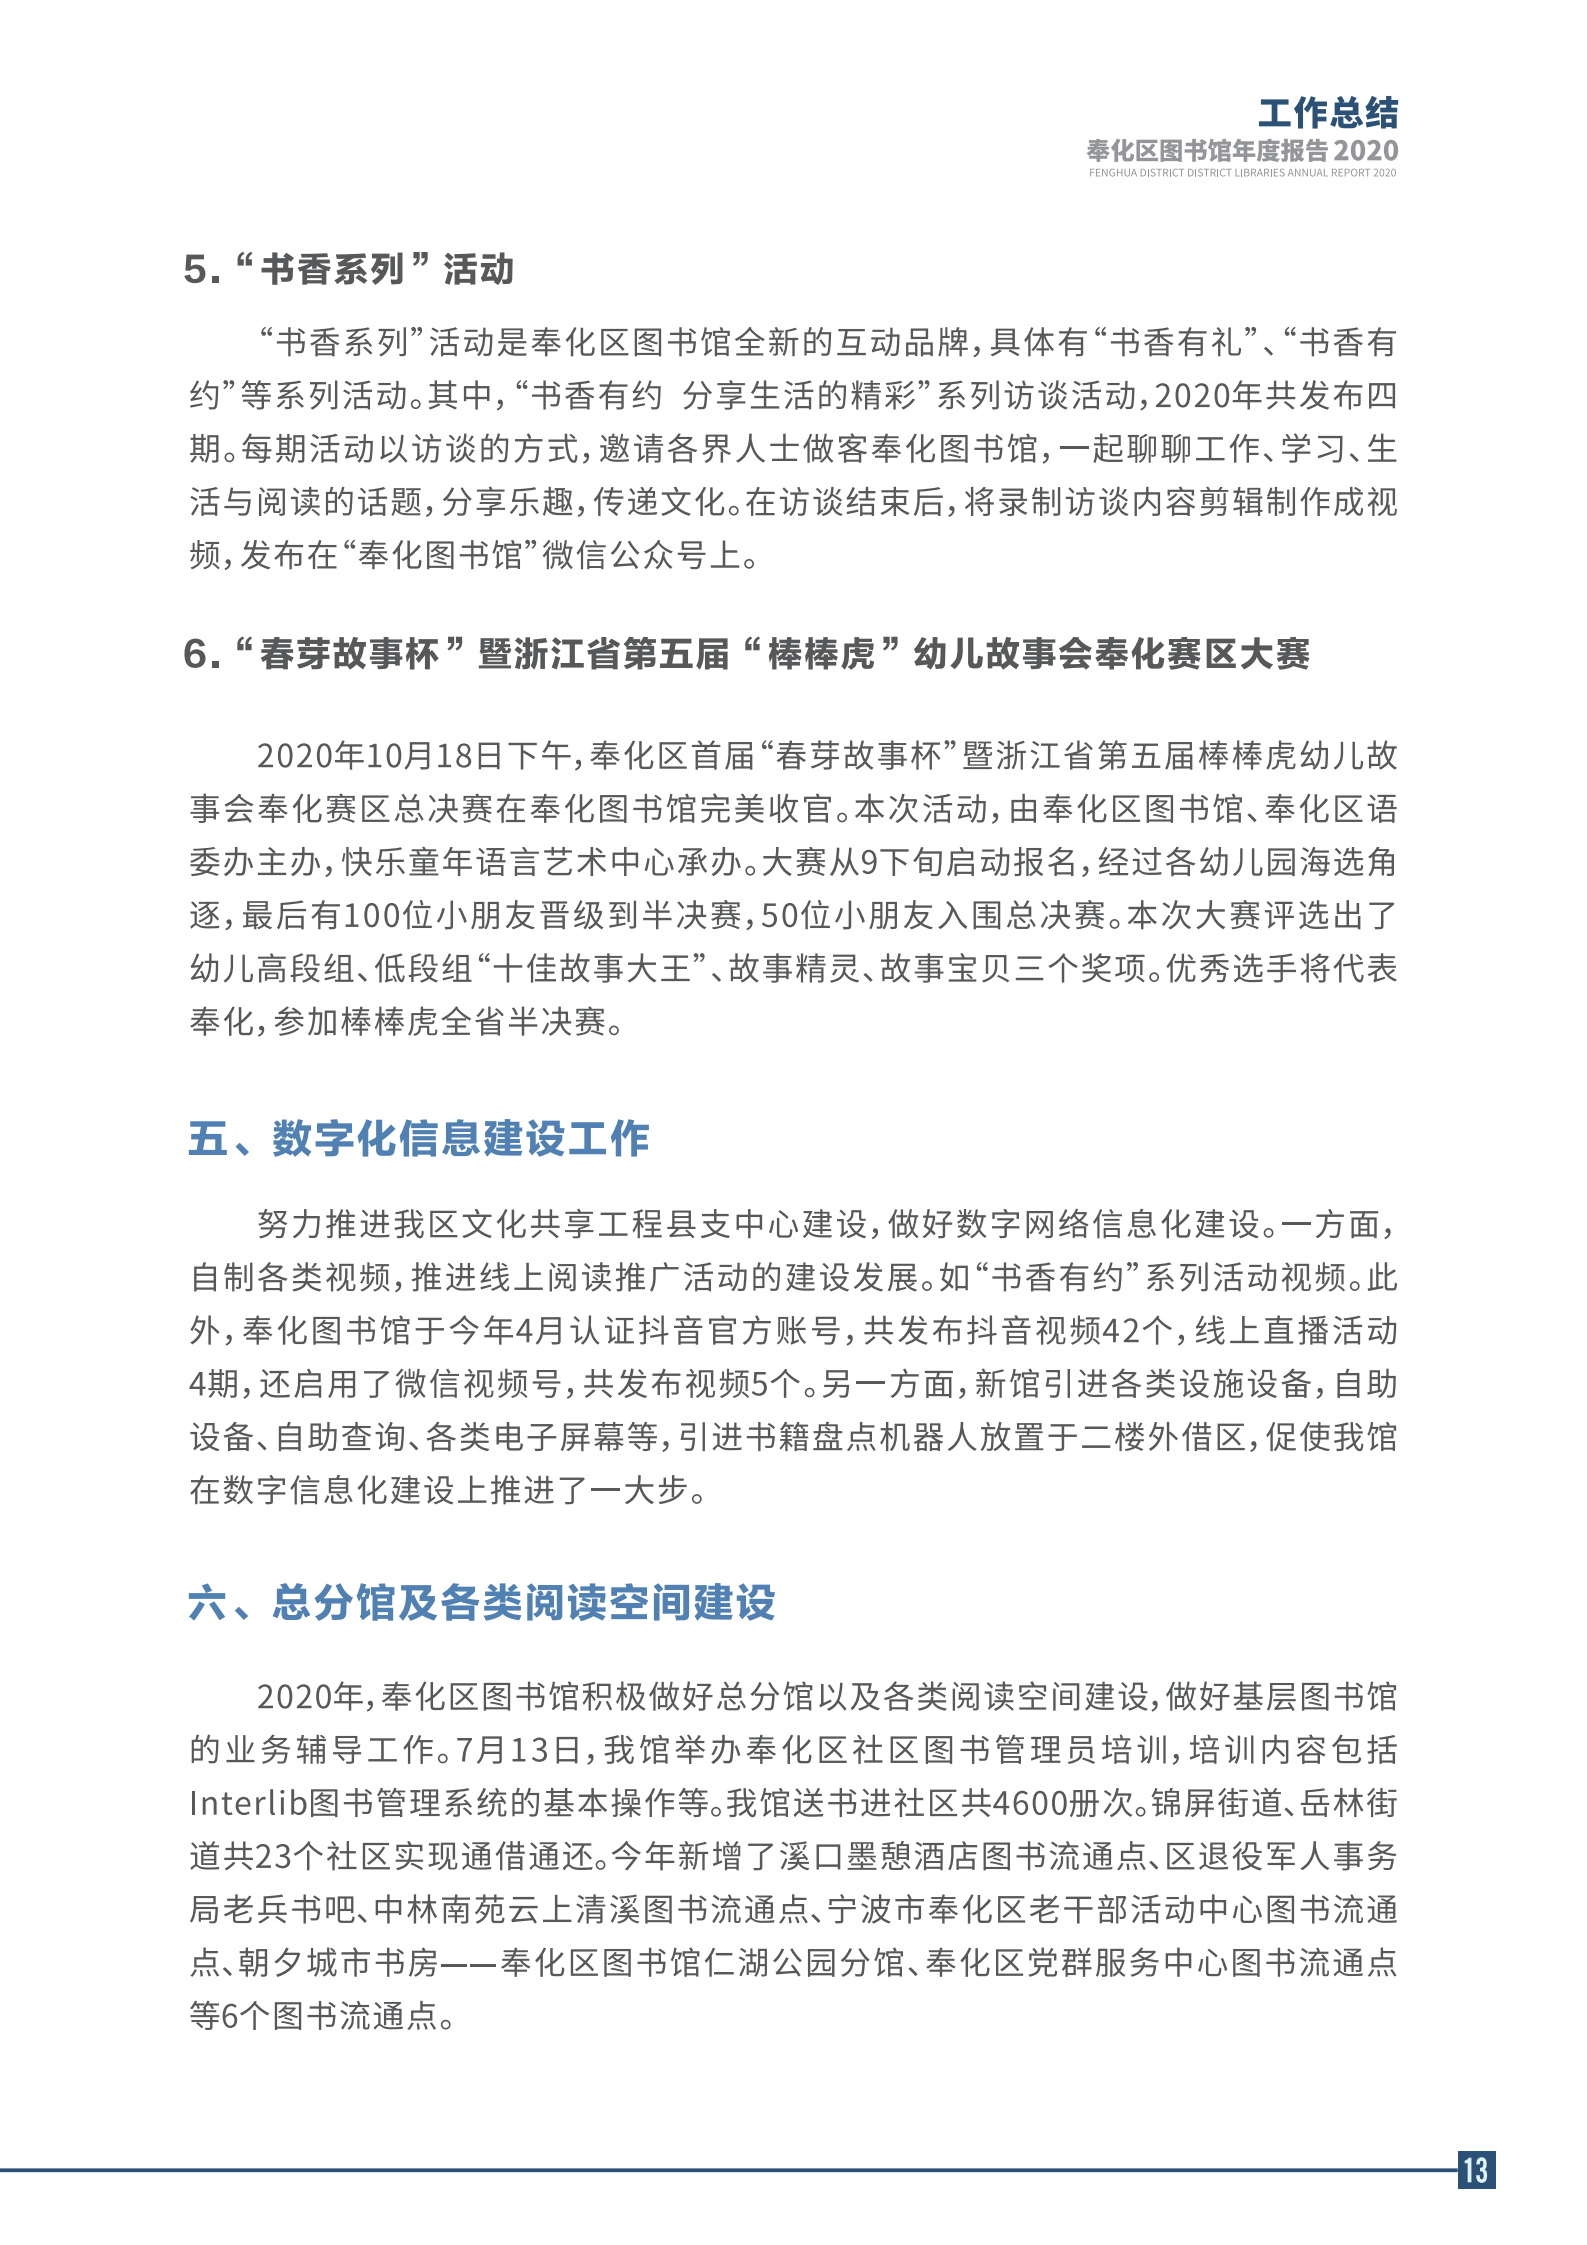 宁波市奉化区图书馆2020年年度报告 终稿_13.png